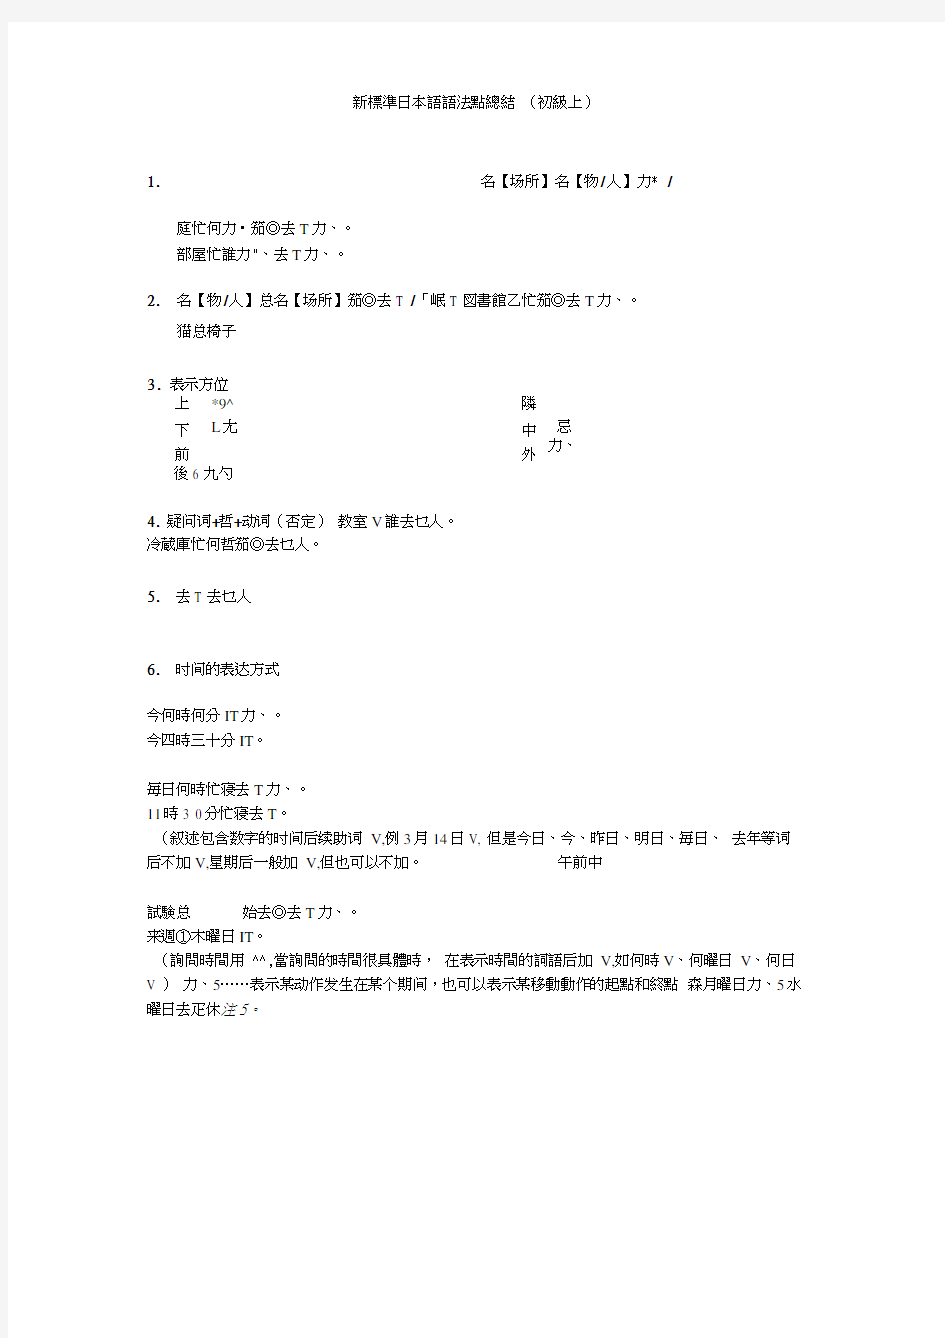 新标准日本语语法点总结(初级上)